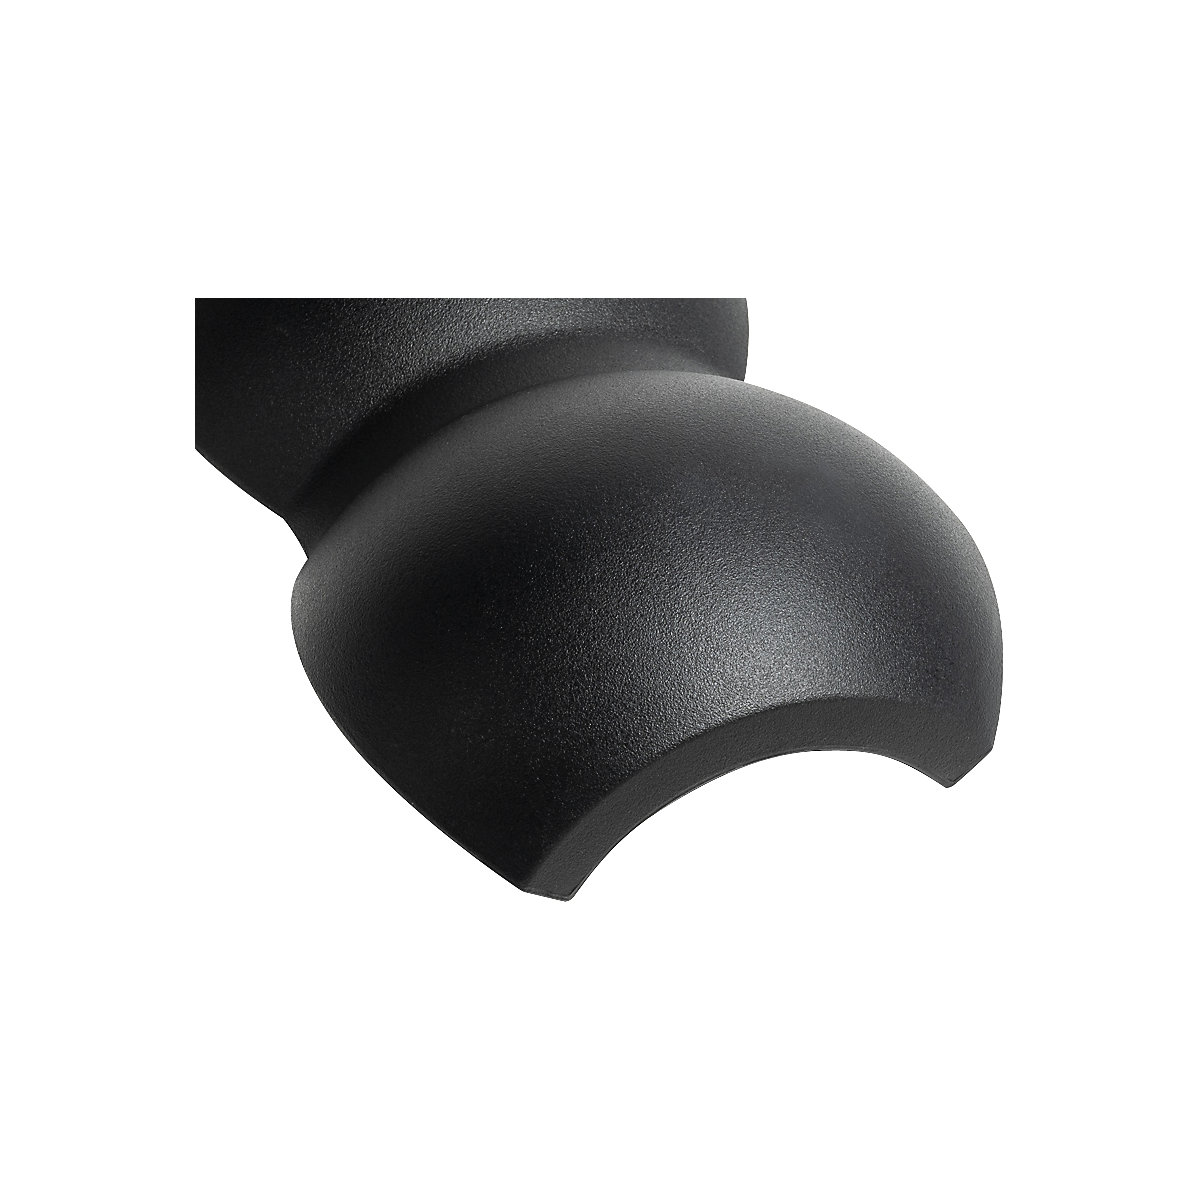 Komplet za proširenje valjka switchROLL, glatka dvostruka kugla – meychair ergonomics, dužina 295 mm, u crnoj boji-2